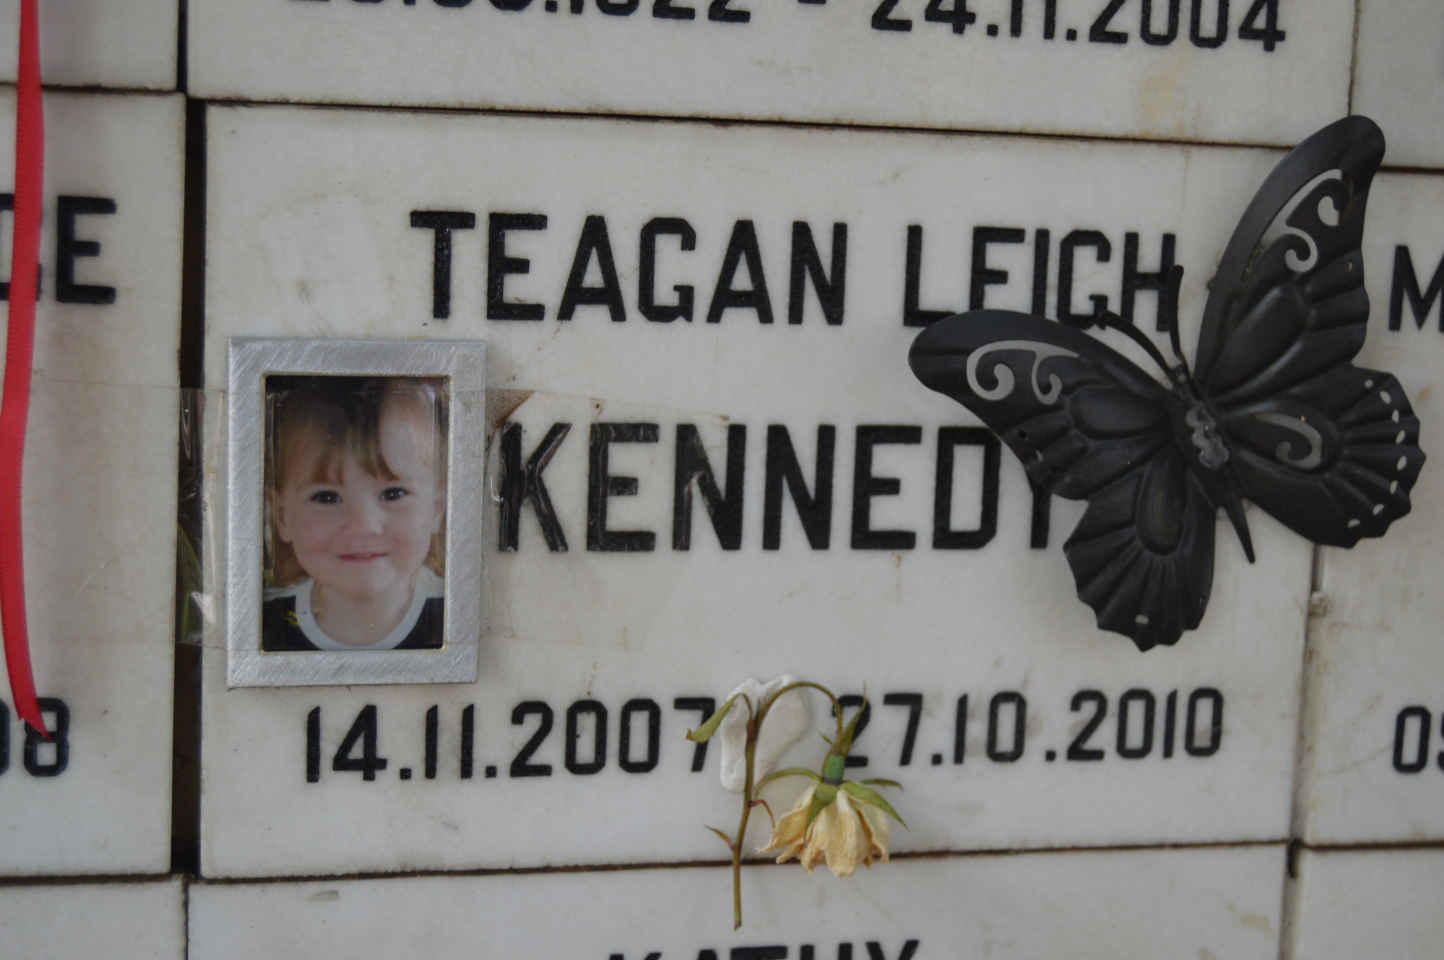 KENNEDY Teagan Leigh 2007-2010